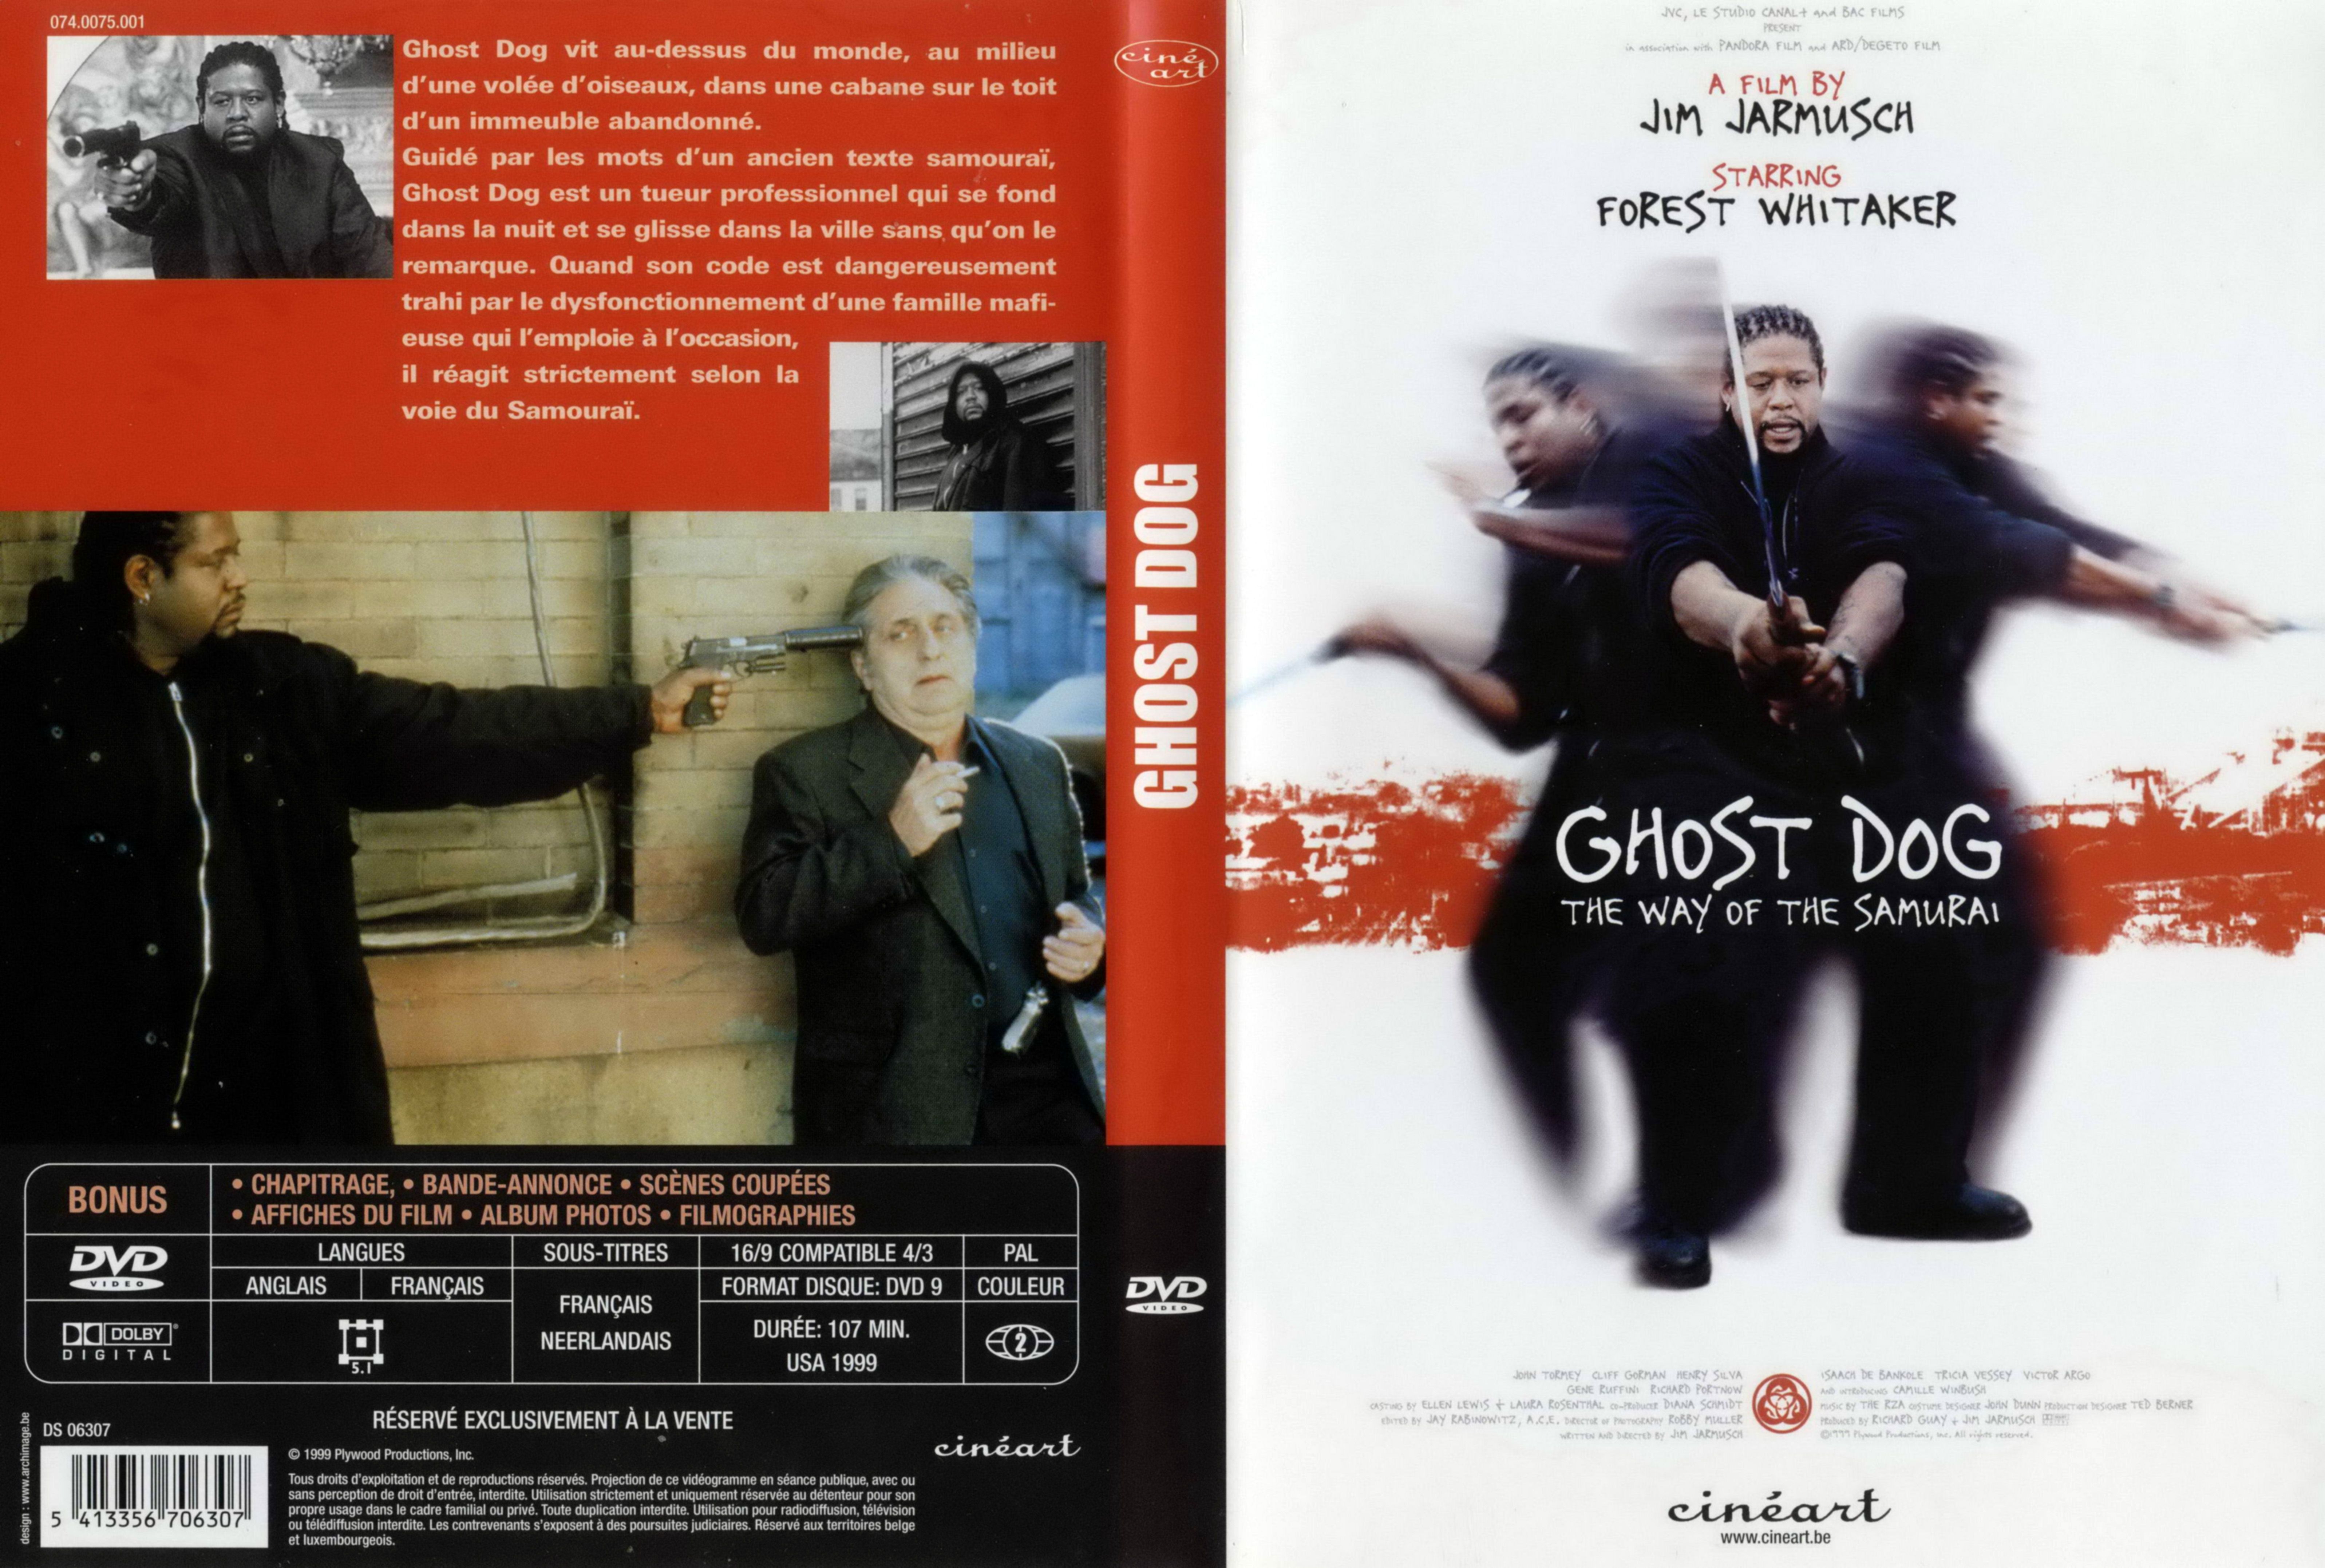 Jaquette DVD Ghost dog v2